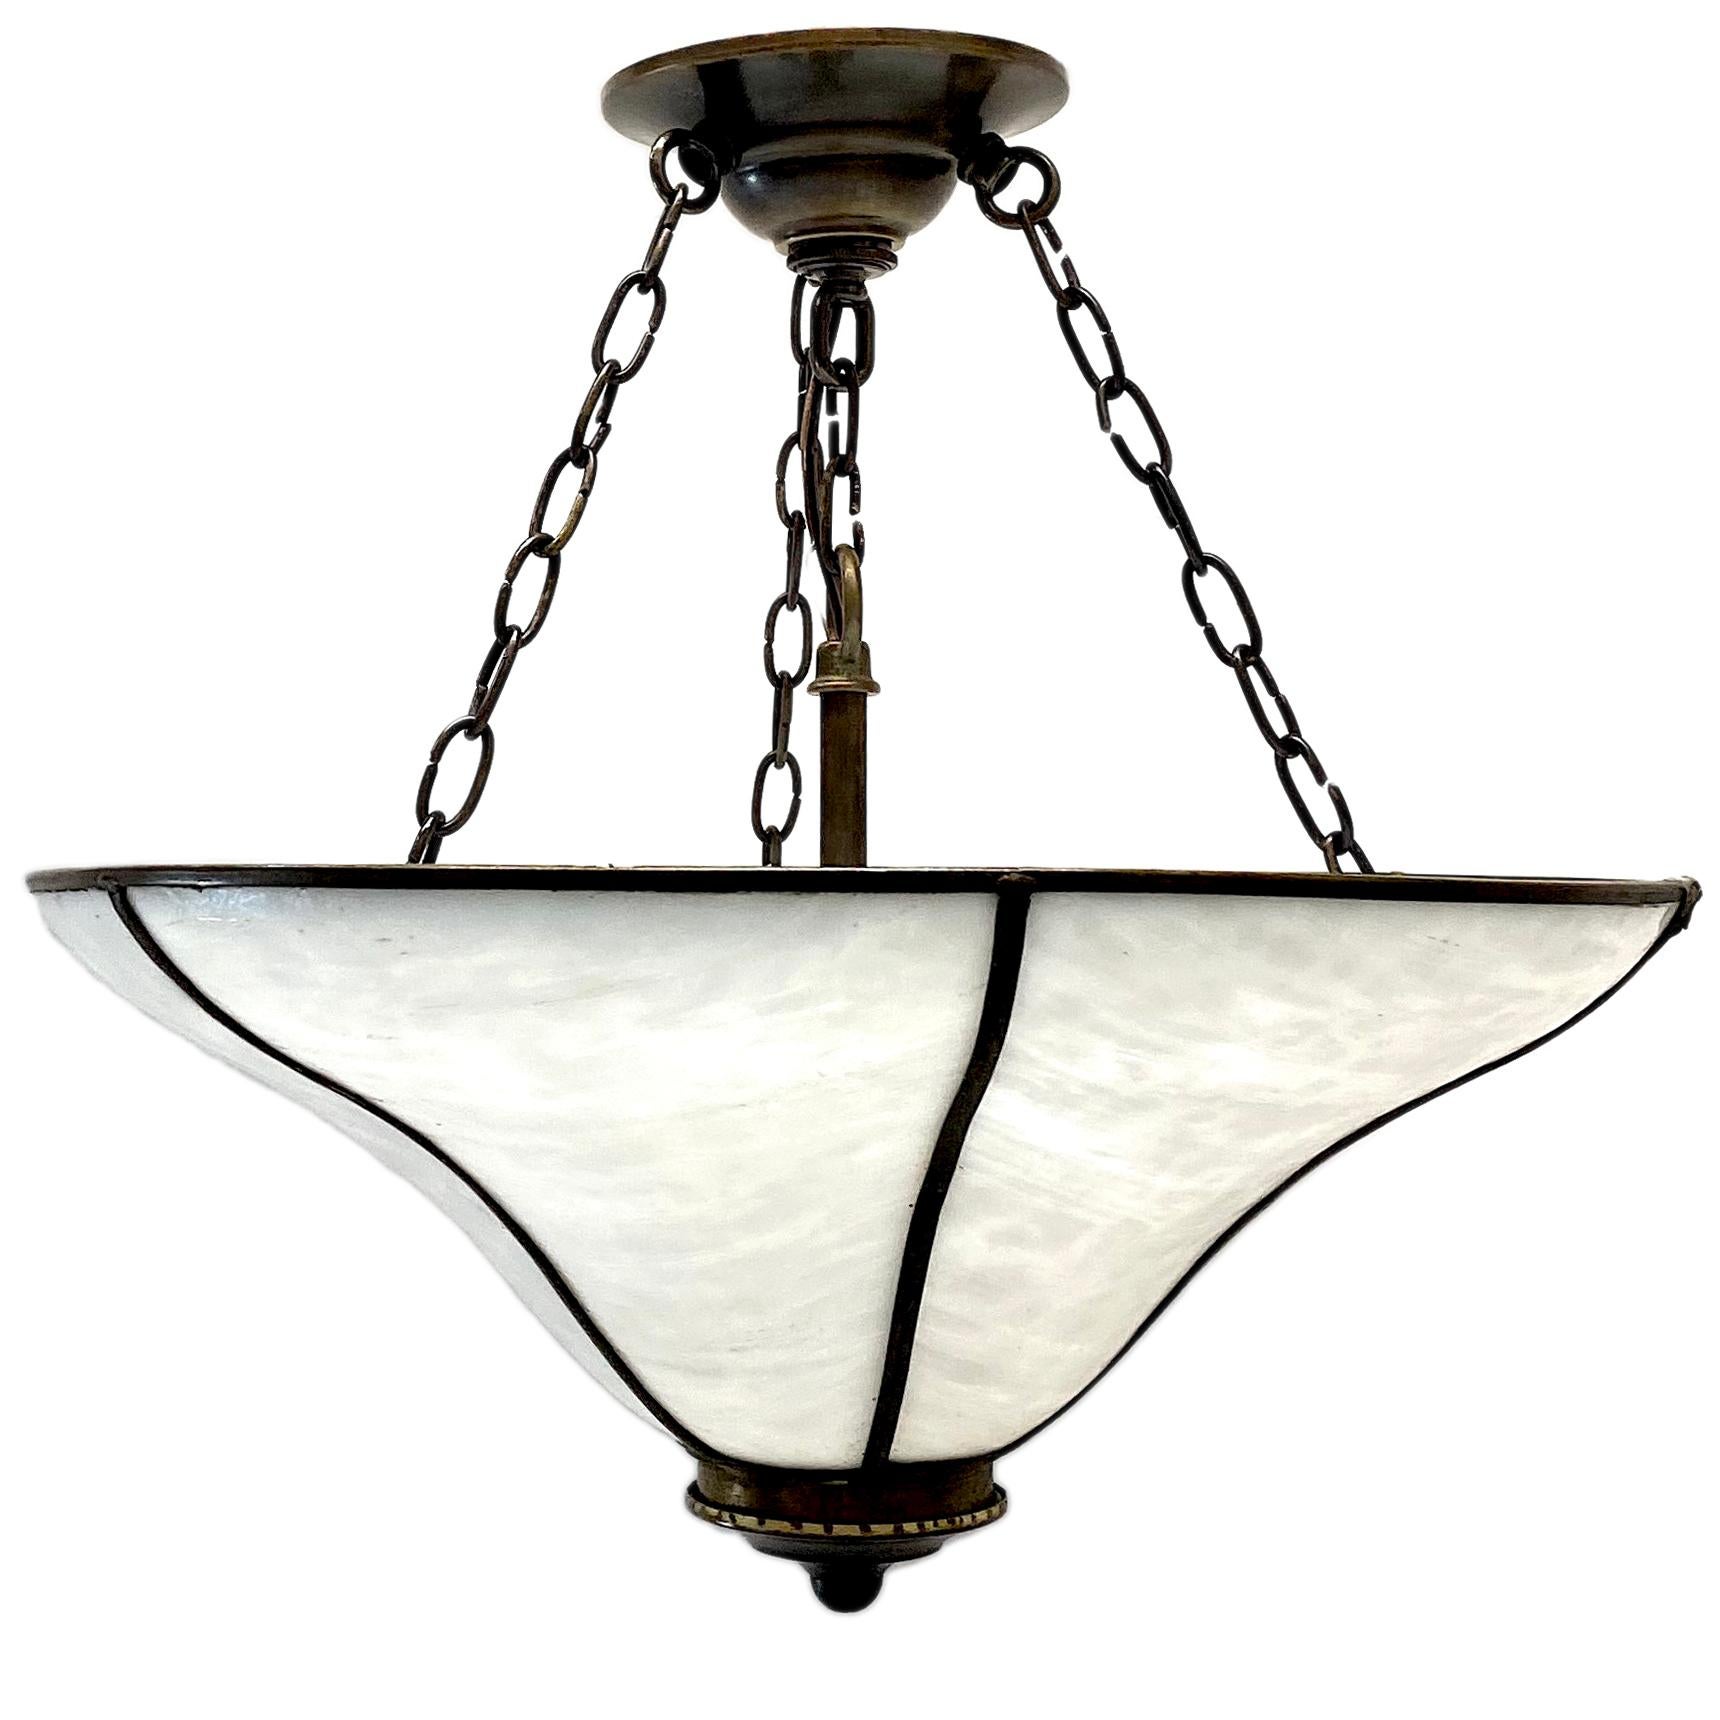 Un luminaire en verre plombé anglais des années 1930 avec quatre lumières intérieures.

Mesures :
Diamètre : 17